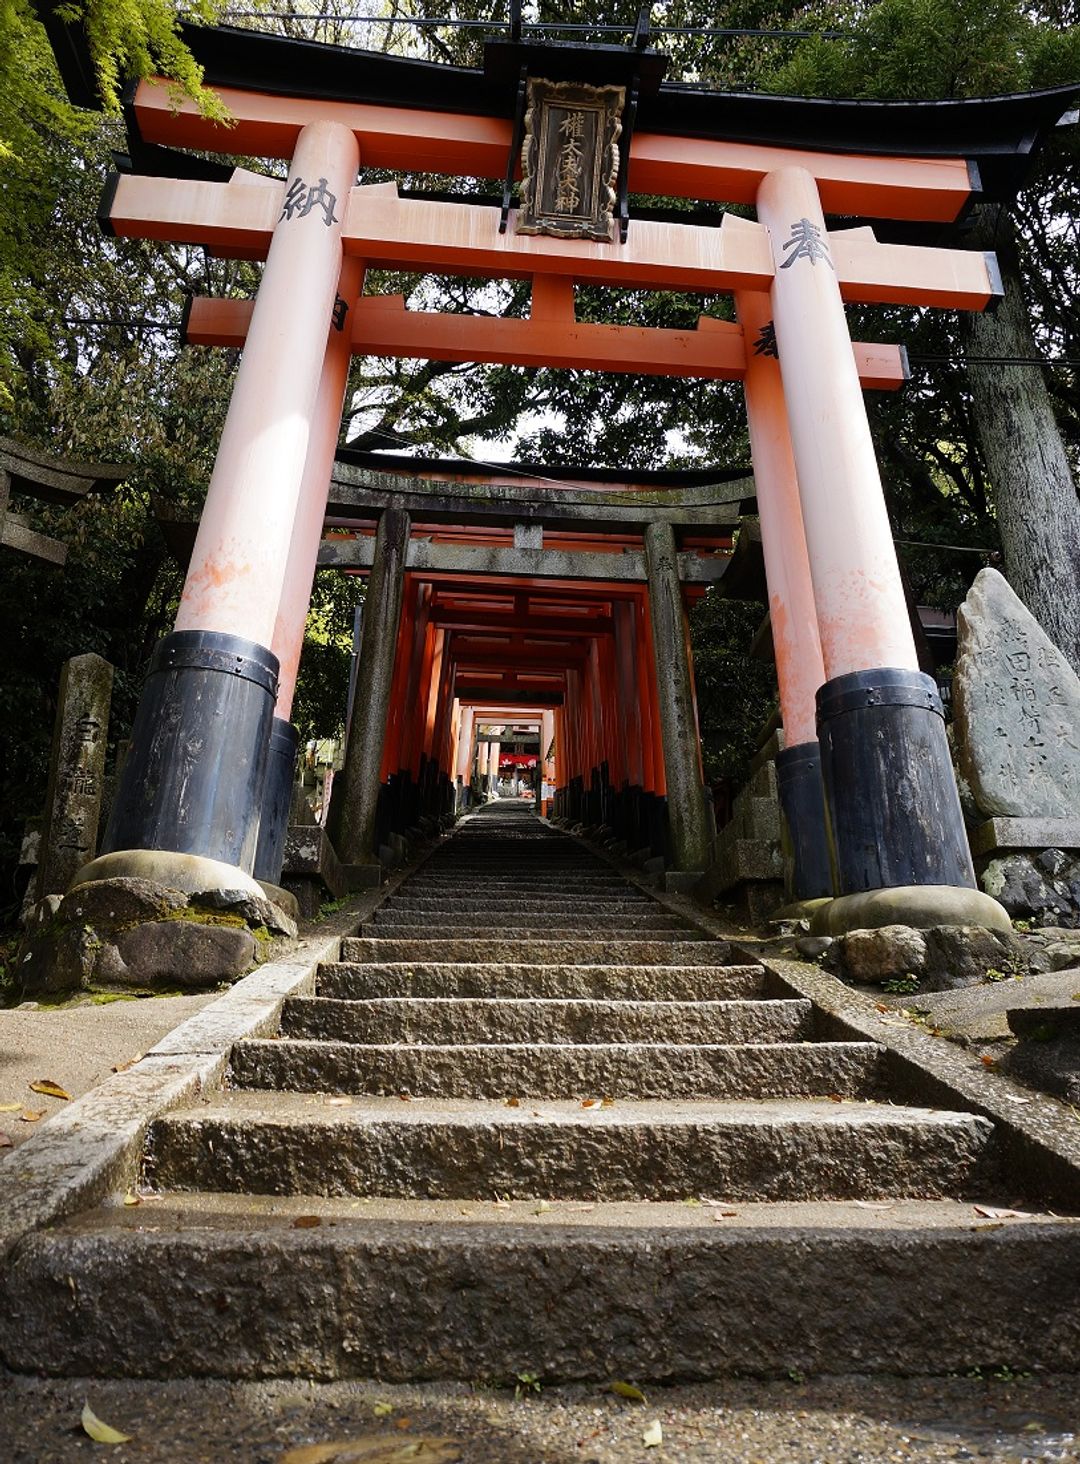 京都神社 伏見稻荷大社 關於信仰 上集 日本 關西 旅行酒吧